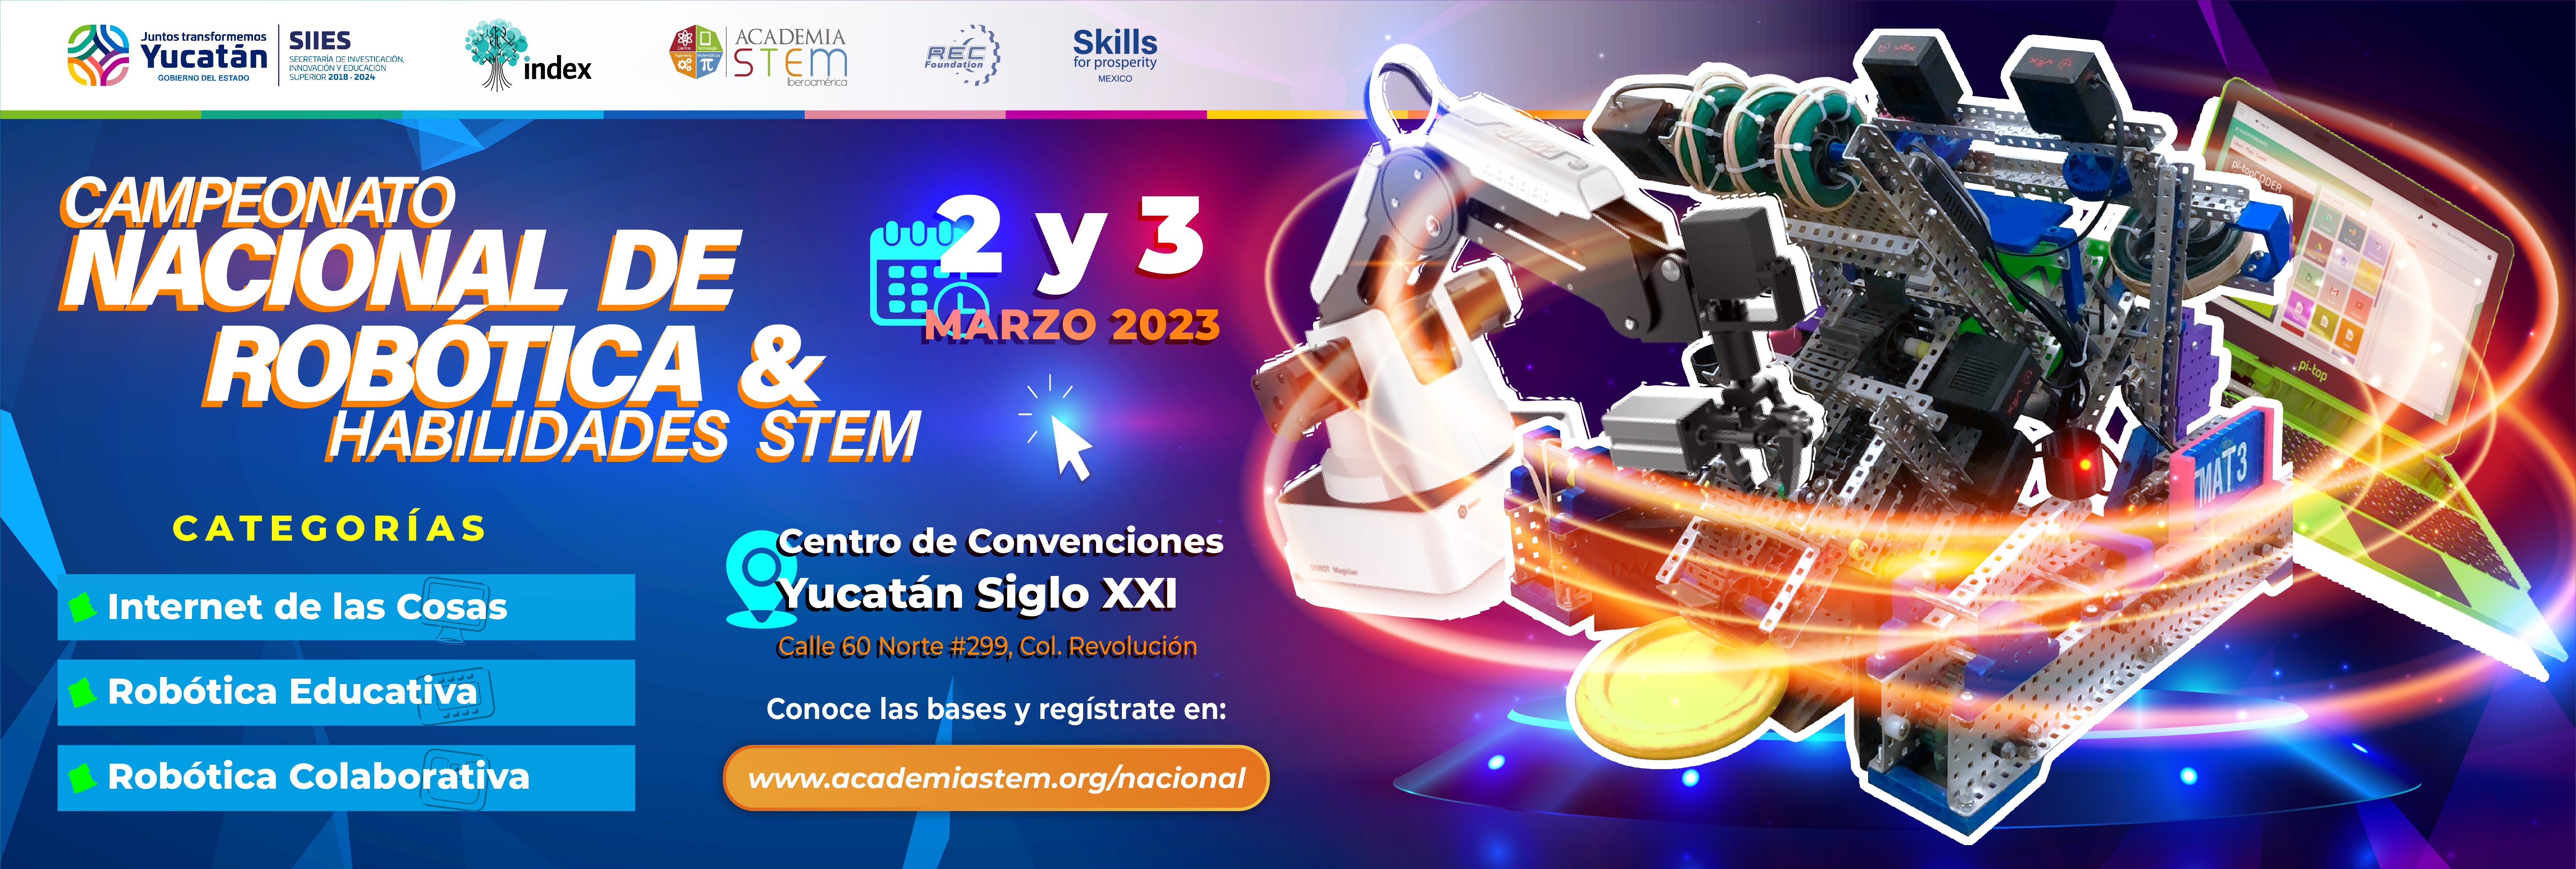 Campeonato Nacional de Robótica y Habilidades STEM 2023